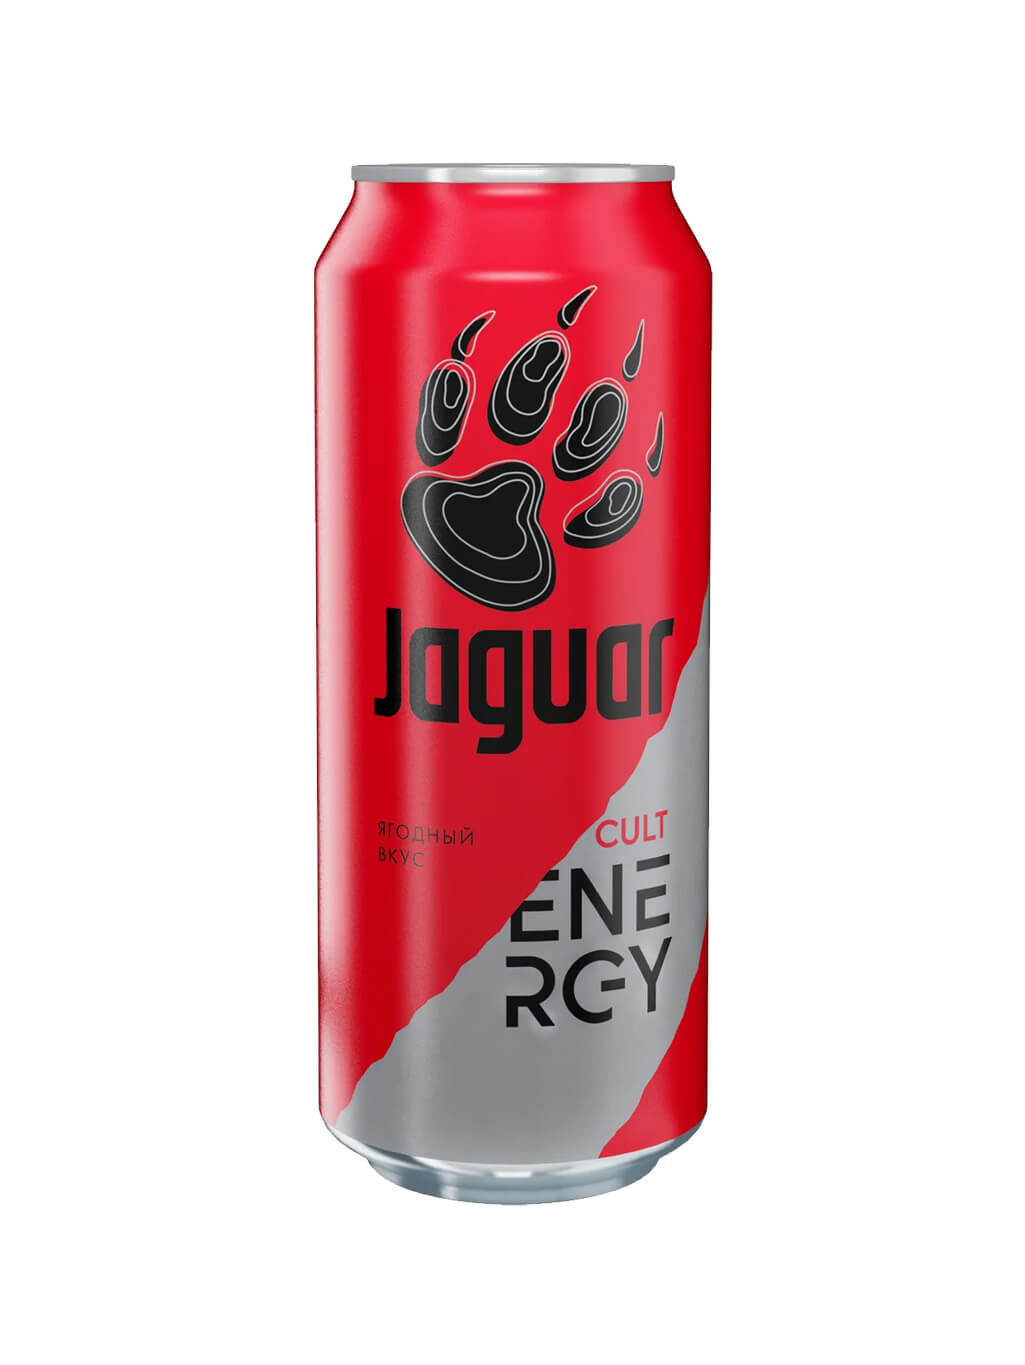 Бан 12. Jaguar Cult Energy ягодный вкус. Ягуар красный Энергетик безалкогольный. Энергетический напиток Ягуар 0,5л. Ягуар культ 0,5л/12 ж/б.